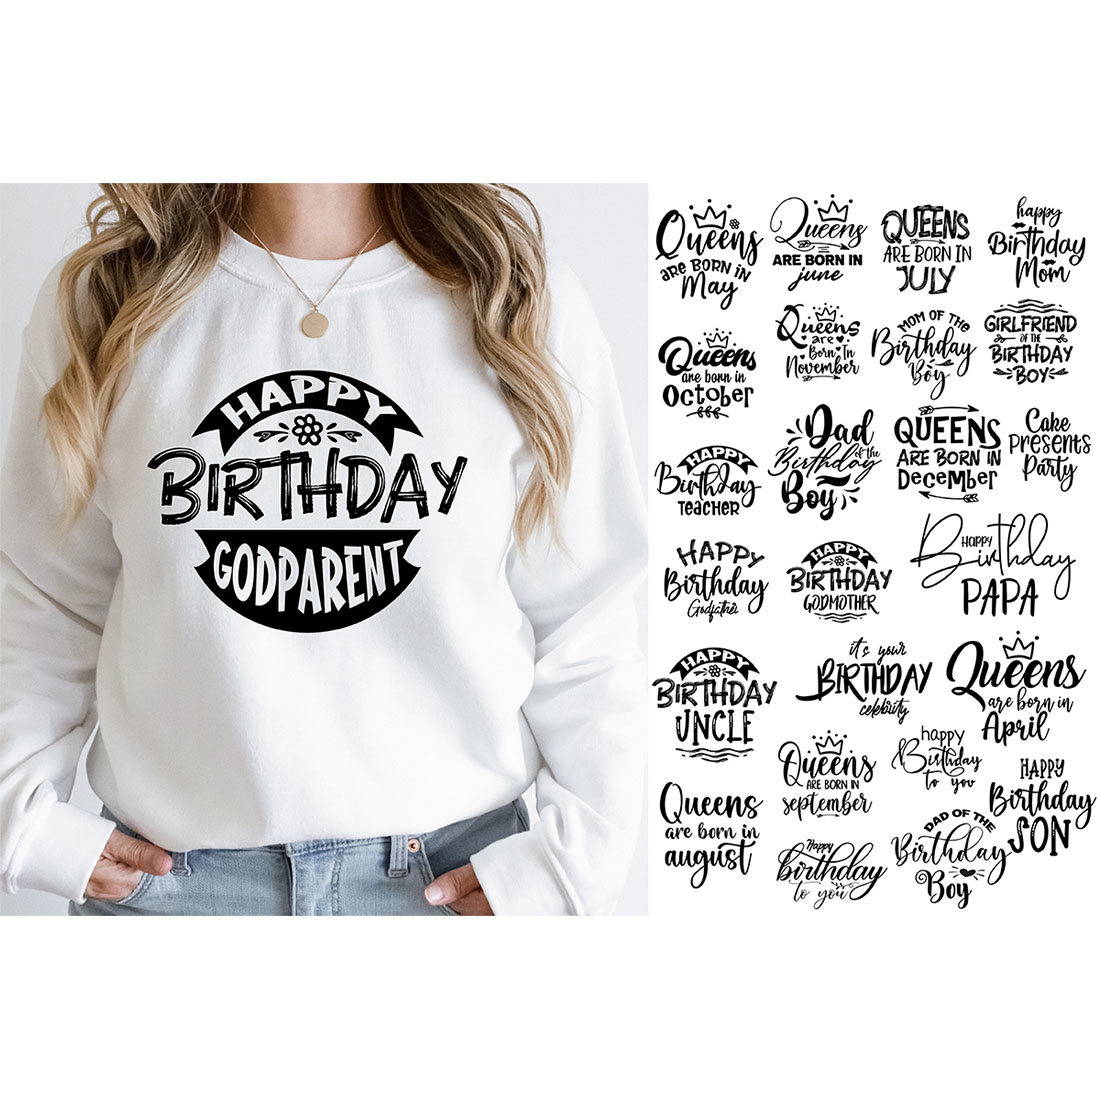 Birthday SVG Bundle, Birthday SVG, Birthday Girl svg, Birthday Shirt SVG, Gift for Birthday svg, Wishes for Birthday,Birthday Funny Quotes, Happy Birthday Svg, Birthday Bundle, preview image.